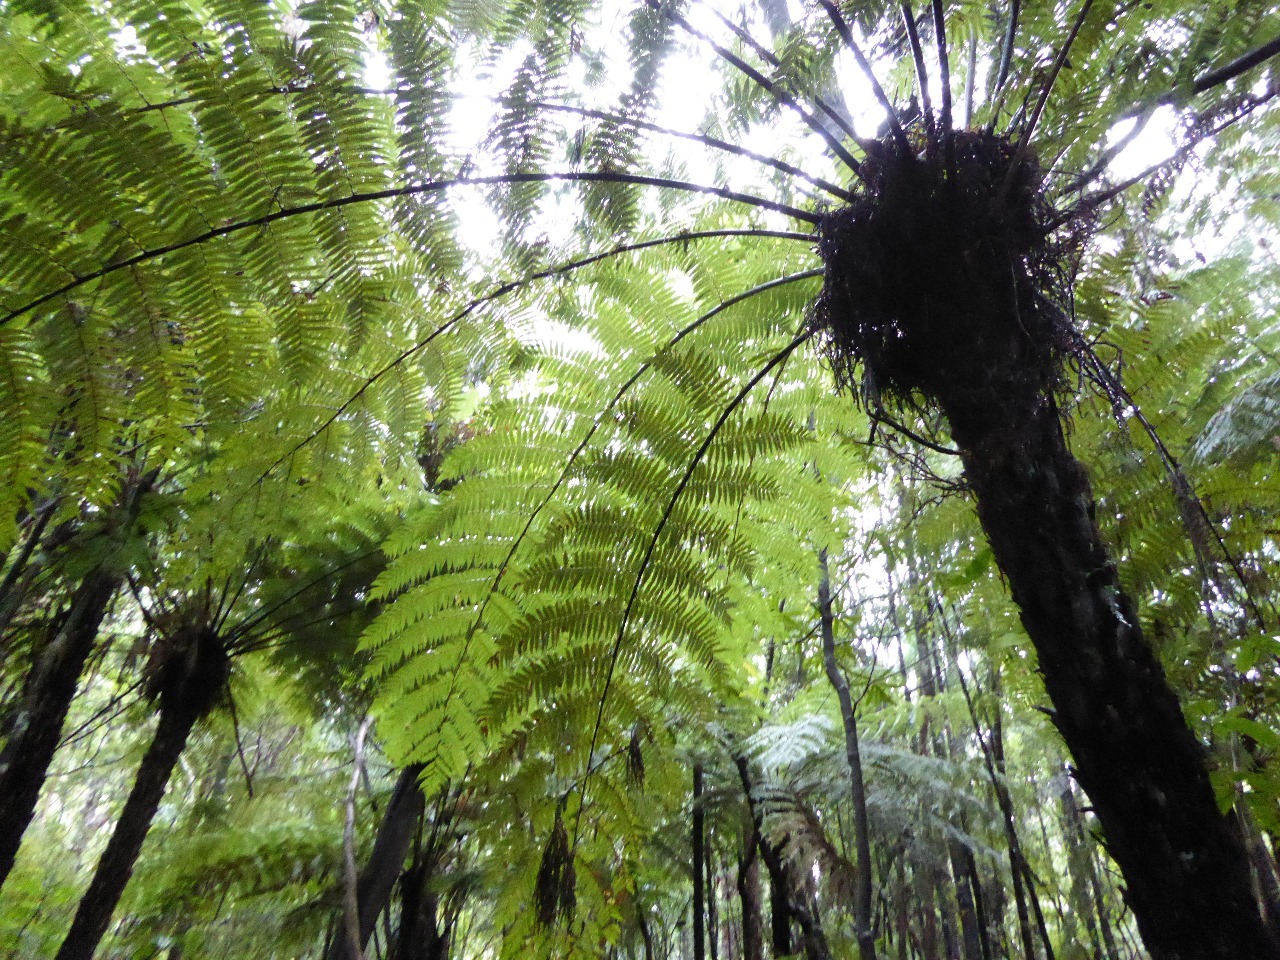 Mamuka ferns on the Coromandel Peninsula